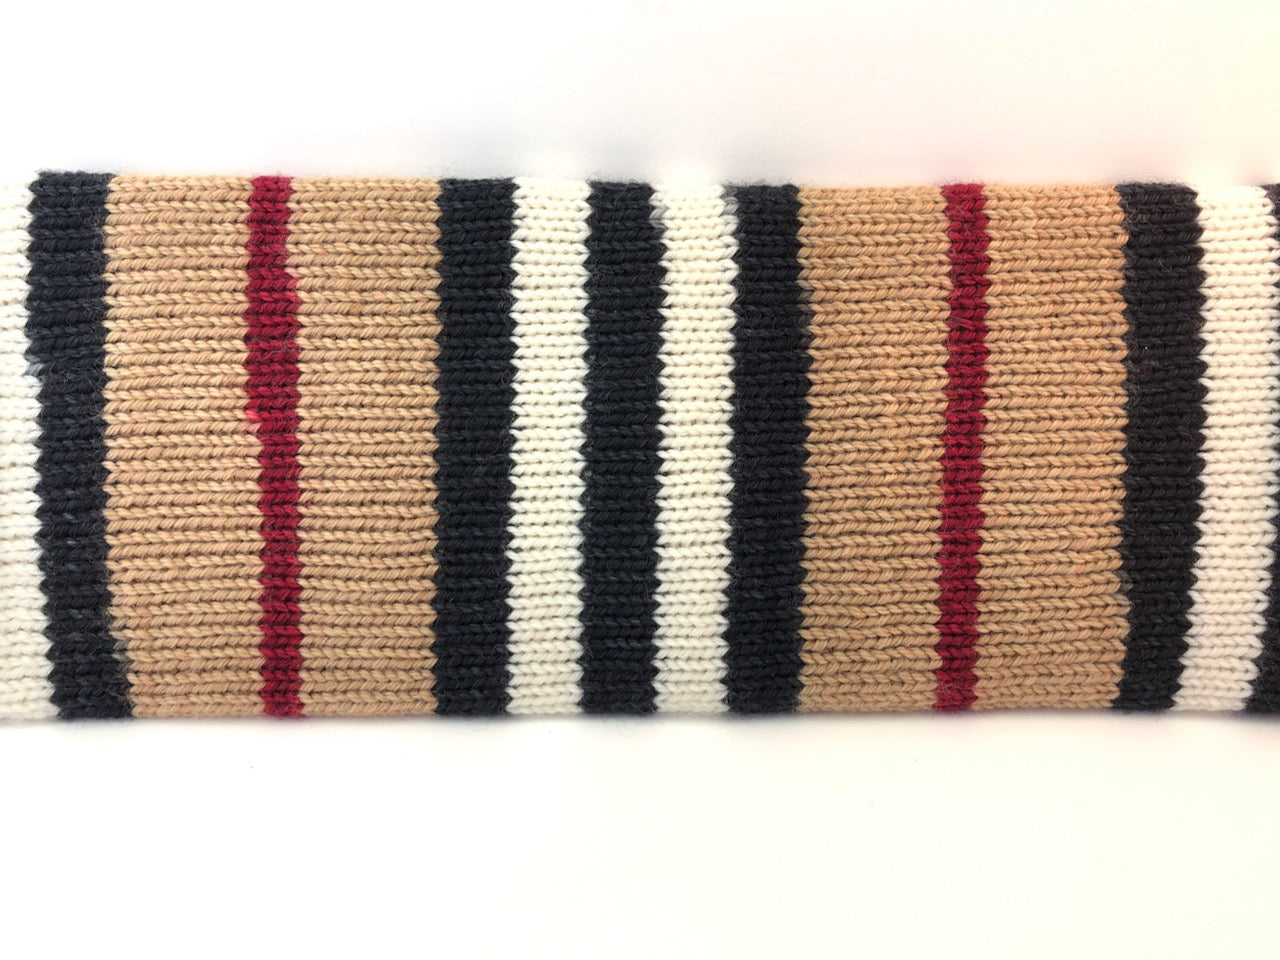 Trenchcoat self-striping sock yarn